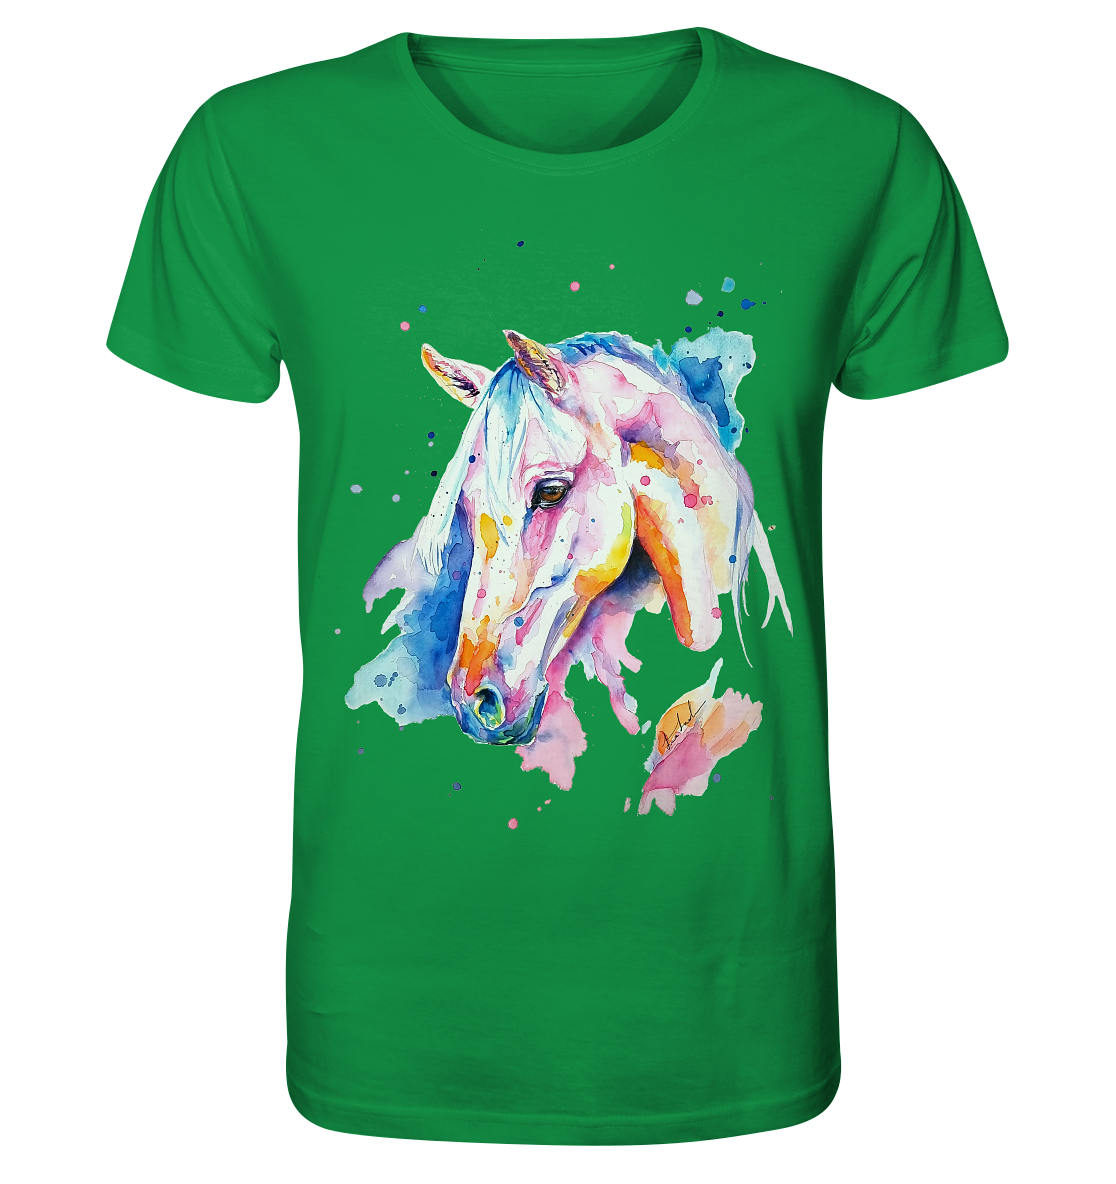 Buntes Pferd - Organic Shirt